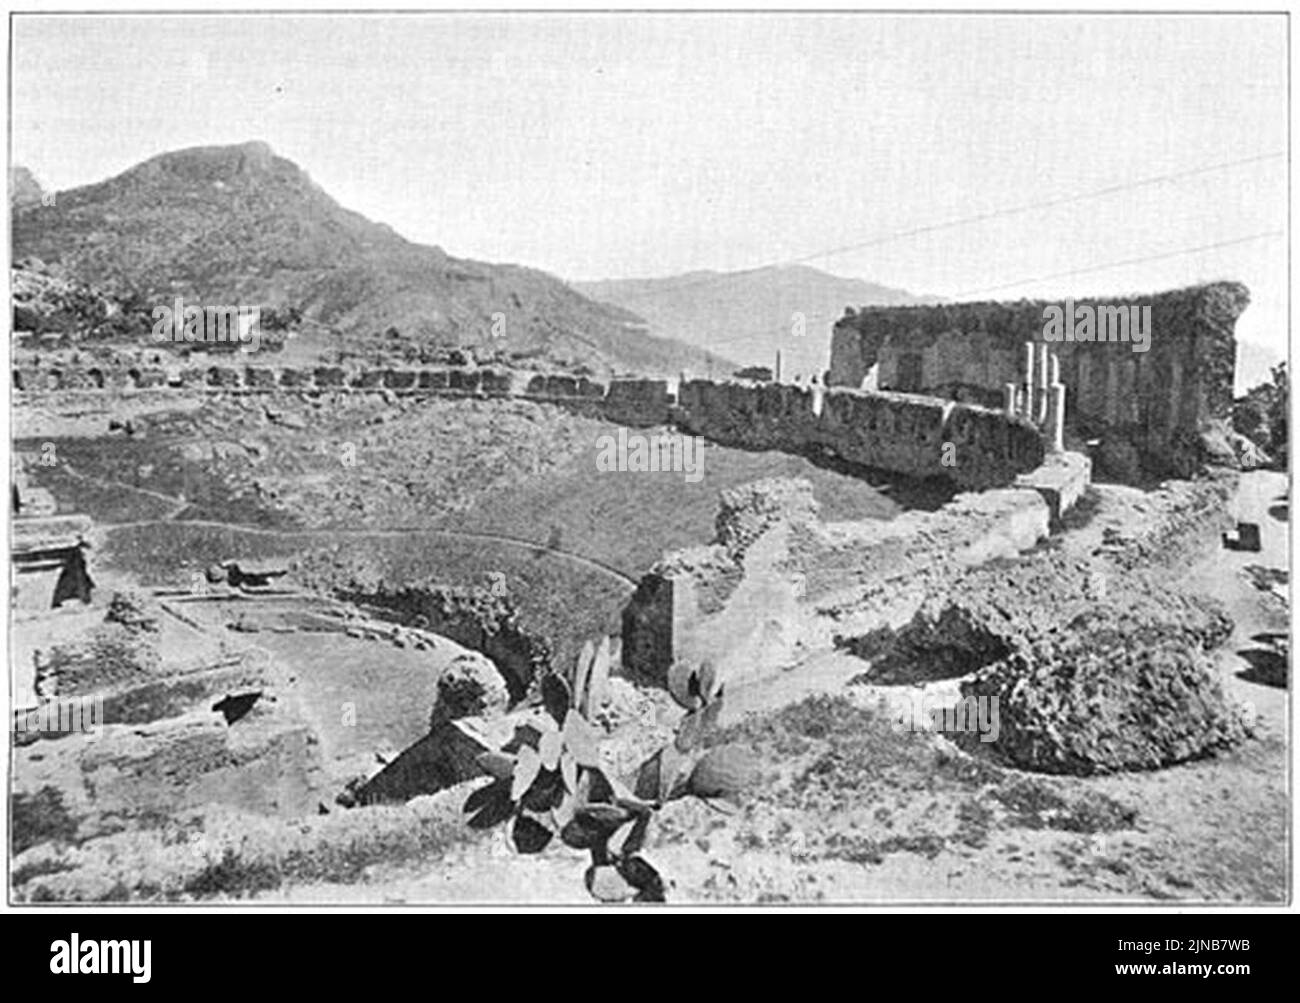 Teatro Greco - Taormina sideview (1906) Stock Photo